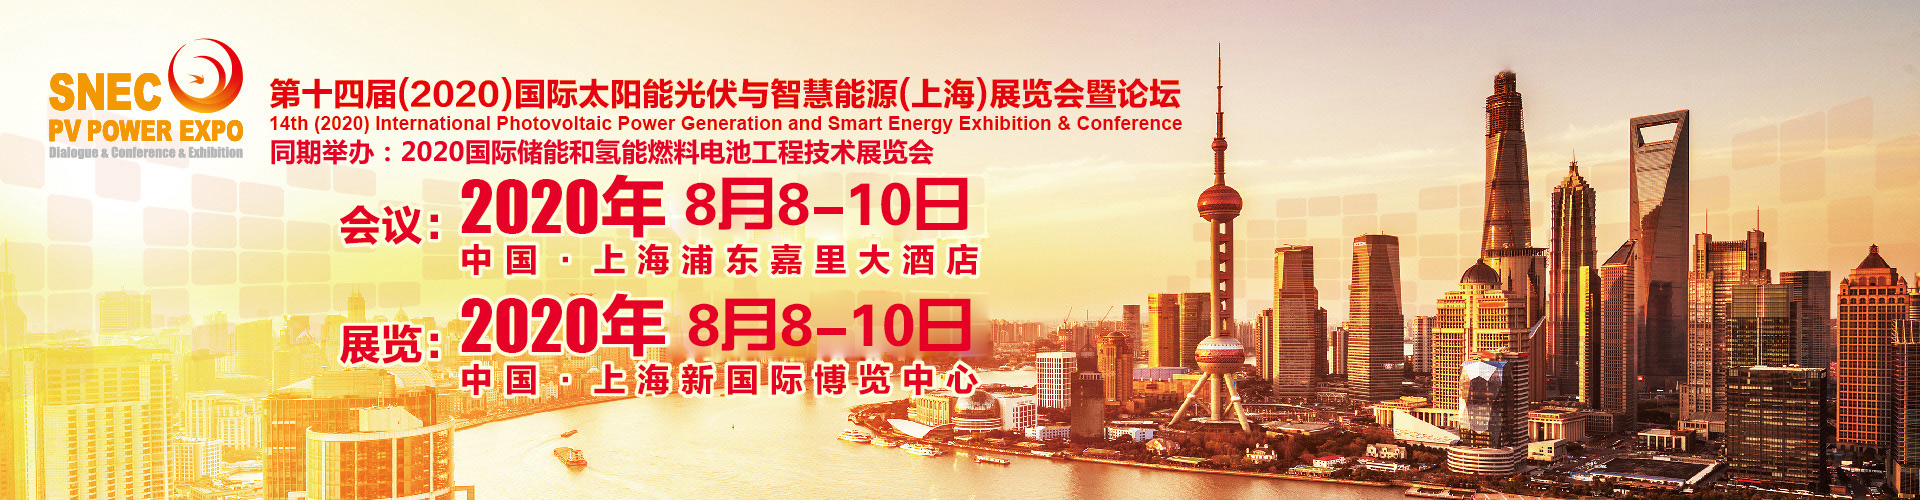 SNEC2020上海*十四届光伏展会、2020上海光伏展